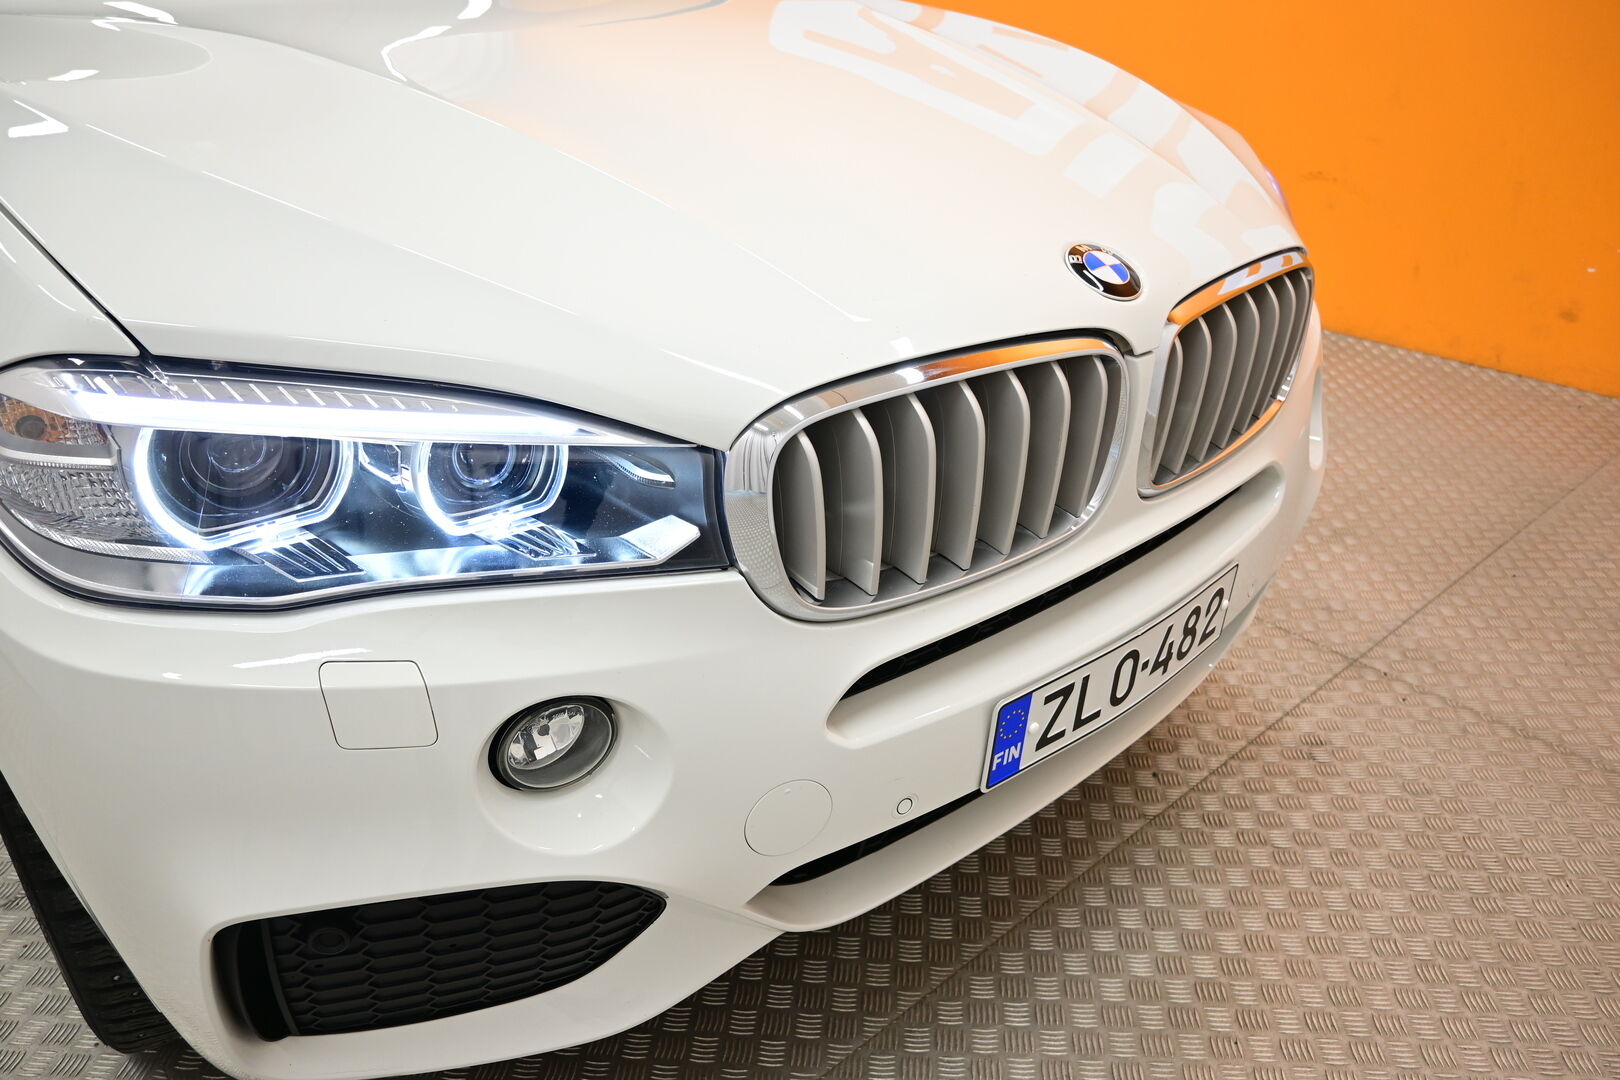 Valkoinen Maastoauto, BMW X5 – ZLO-482